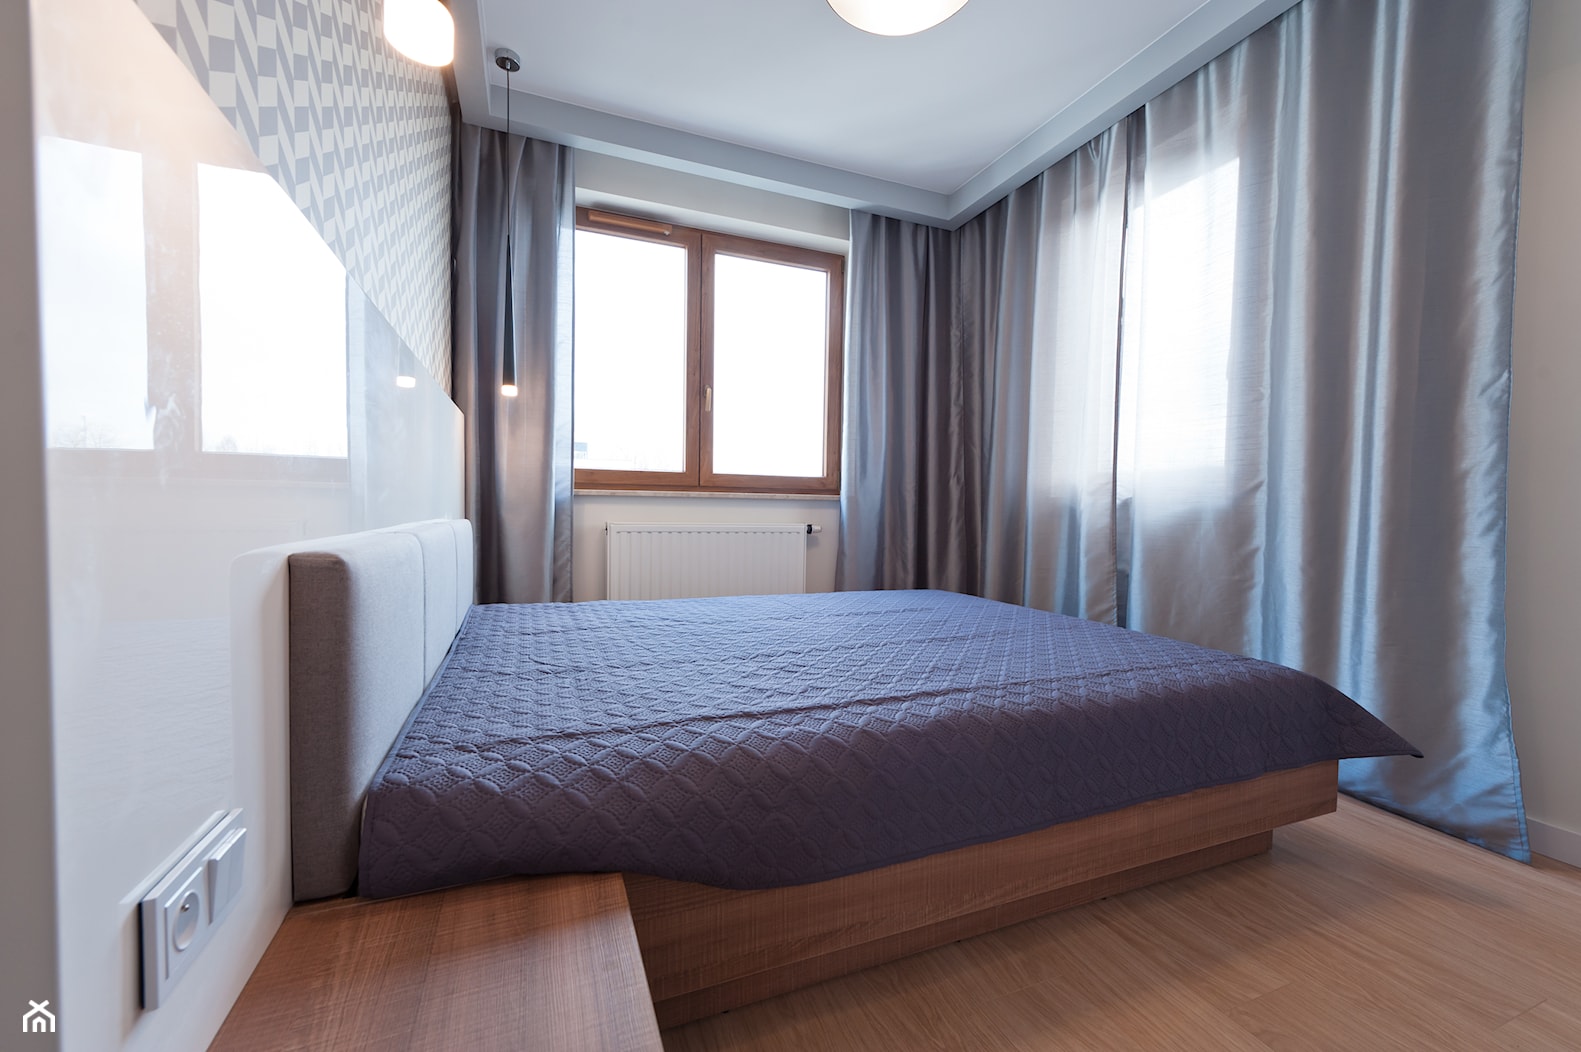 Realizacja - mieszkanie na wynajem w Krakowie z ciemną cegłą - Średnia biała sypialnia, styl nowoczesny - zdjęcie od All Design Agnieszka Lorenc - Homebook